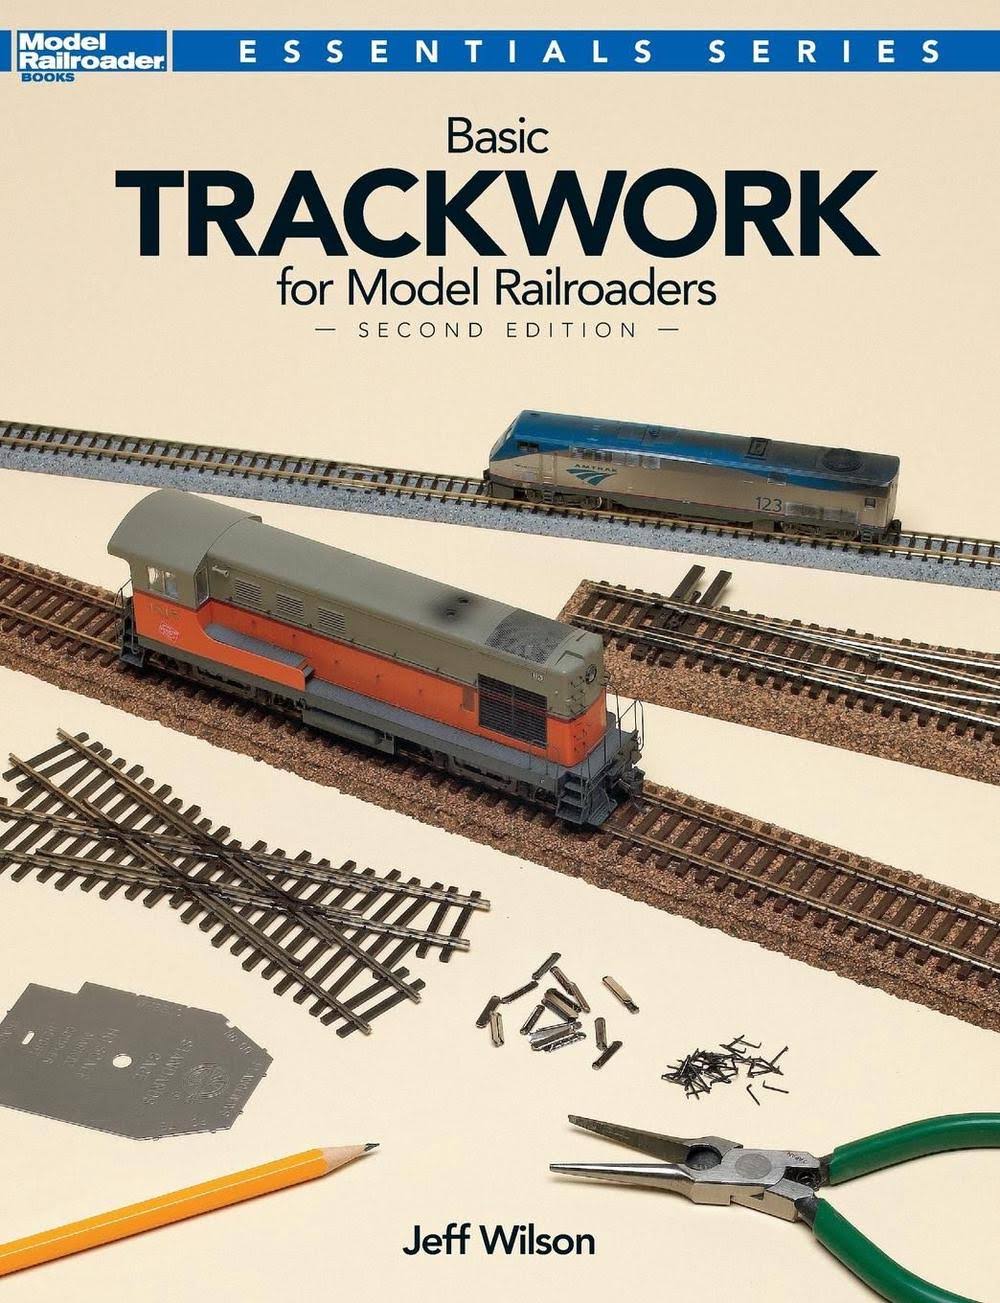 Basic Trackwork for Model Railroaders - Jeff Wilson